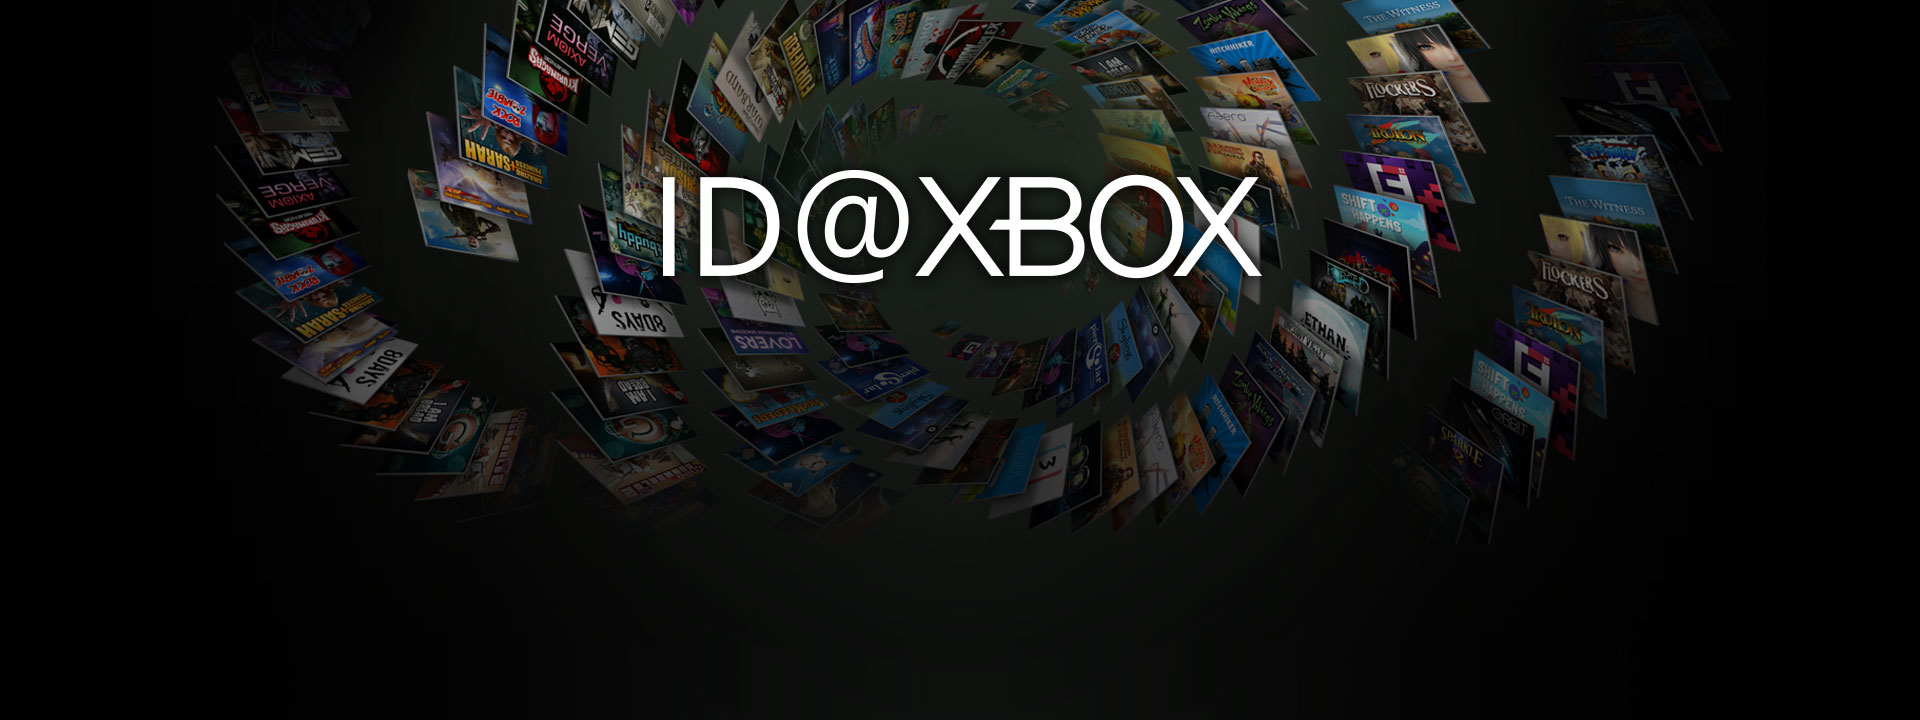 ID at Xbox embléma független játékok dobozképeinek gyűjteménye előtt